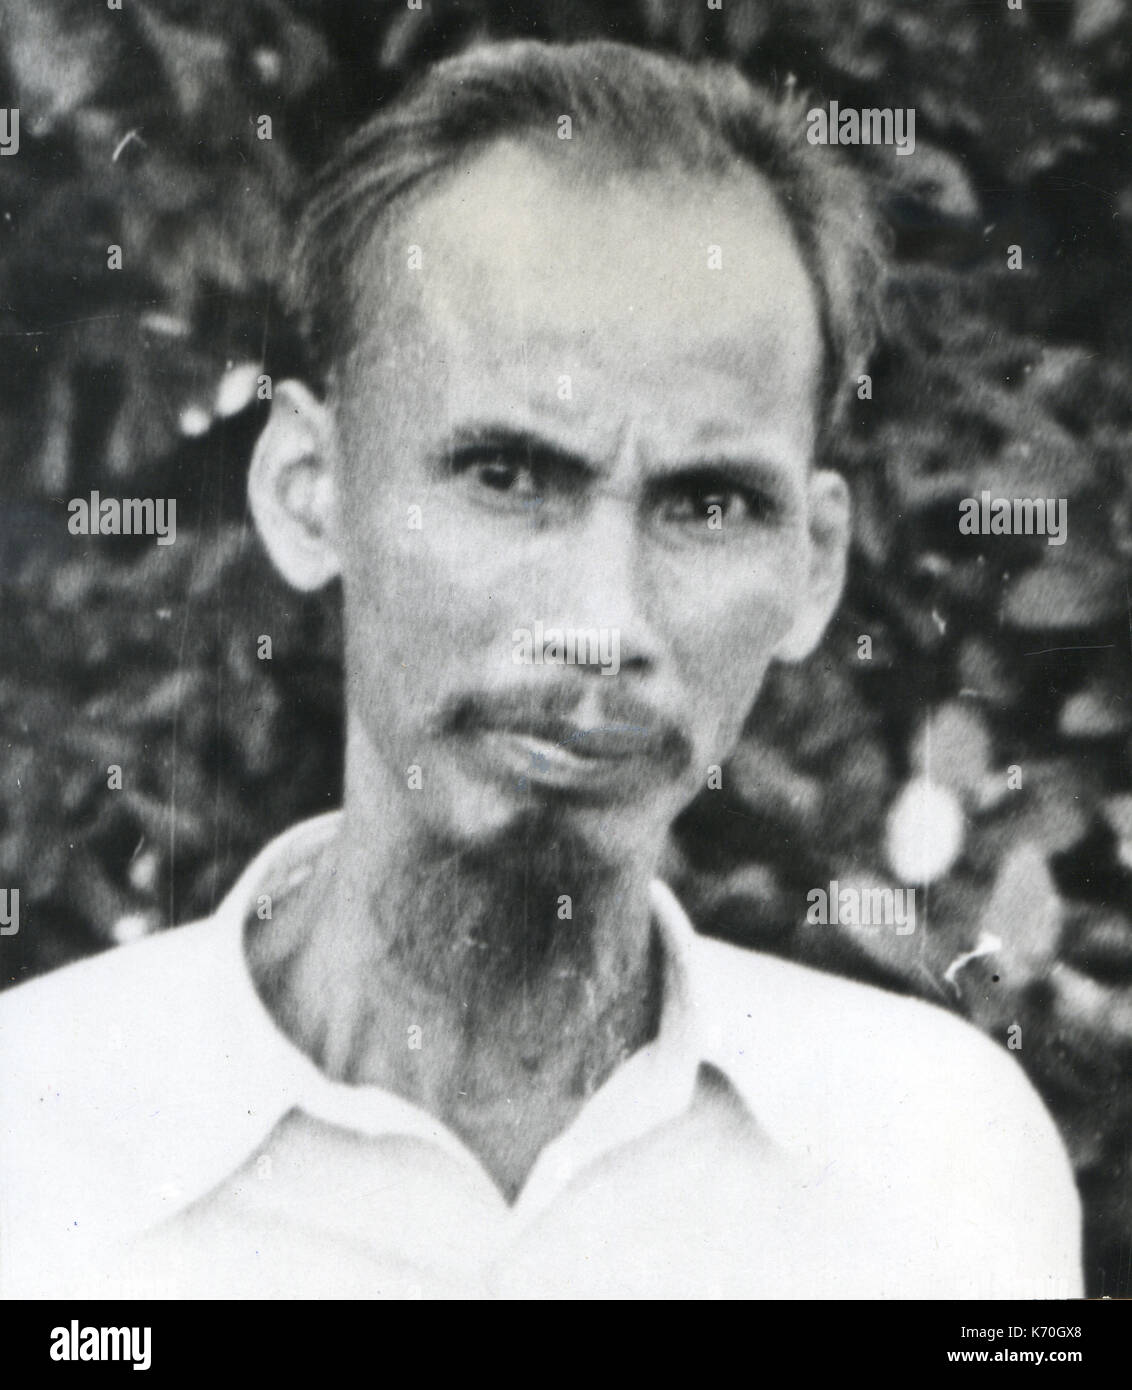 Les années 50 - Ho Chi Minh, leader communiste vietnamien Banque D'Images